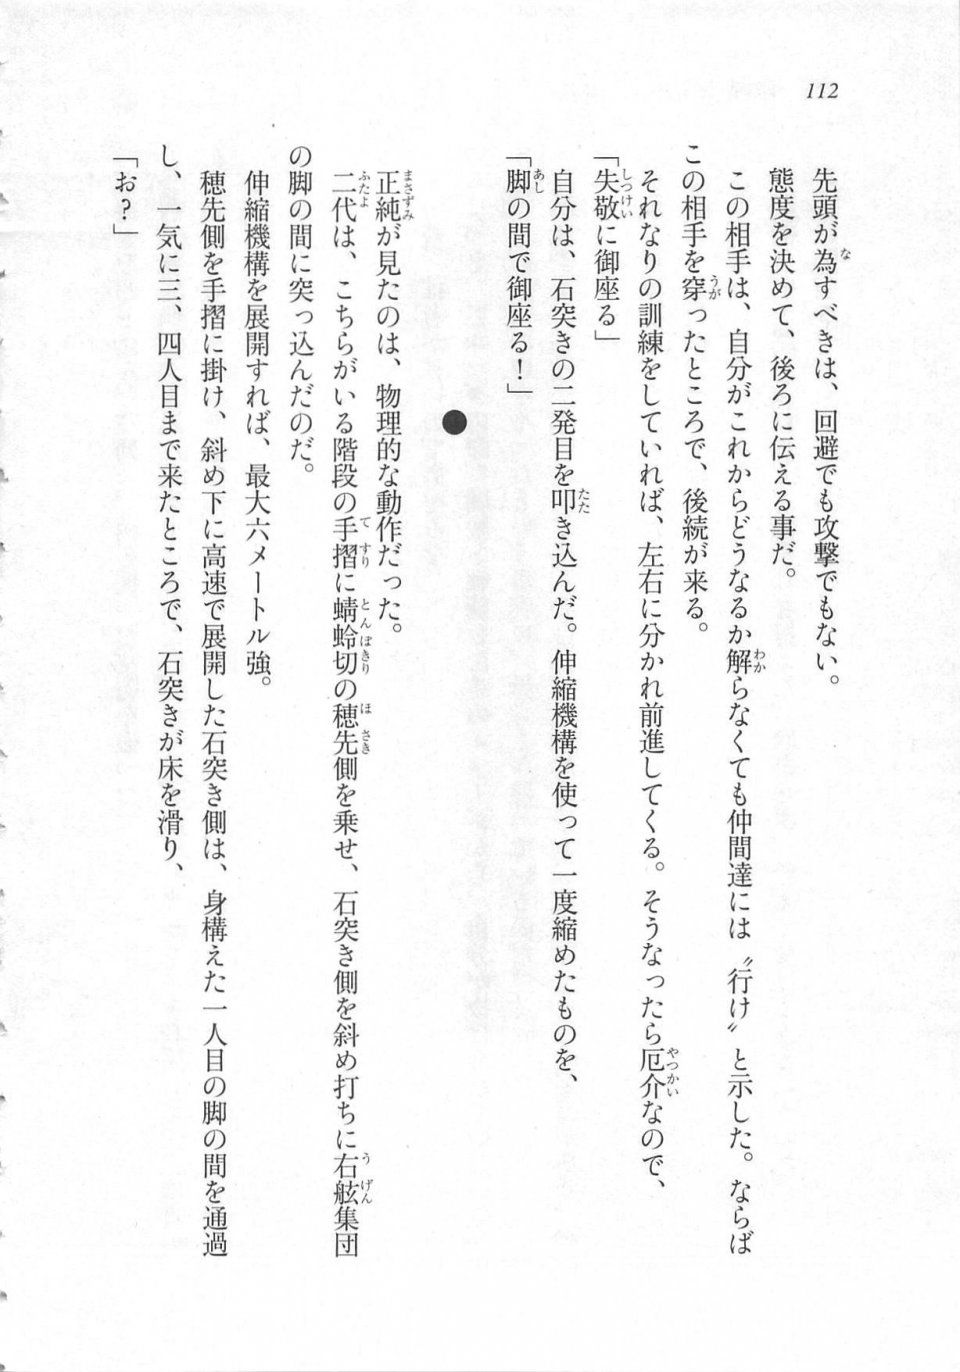 Kyoukai Senjou no Horizon LN Sidestory Vol 3 - Photo #116